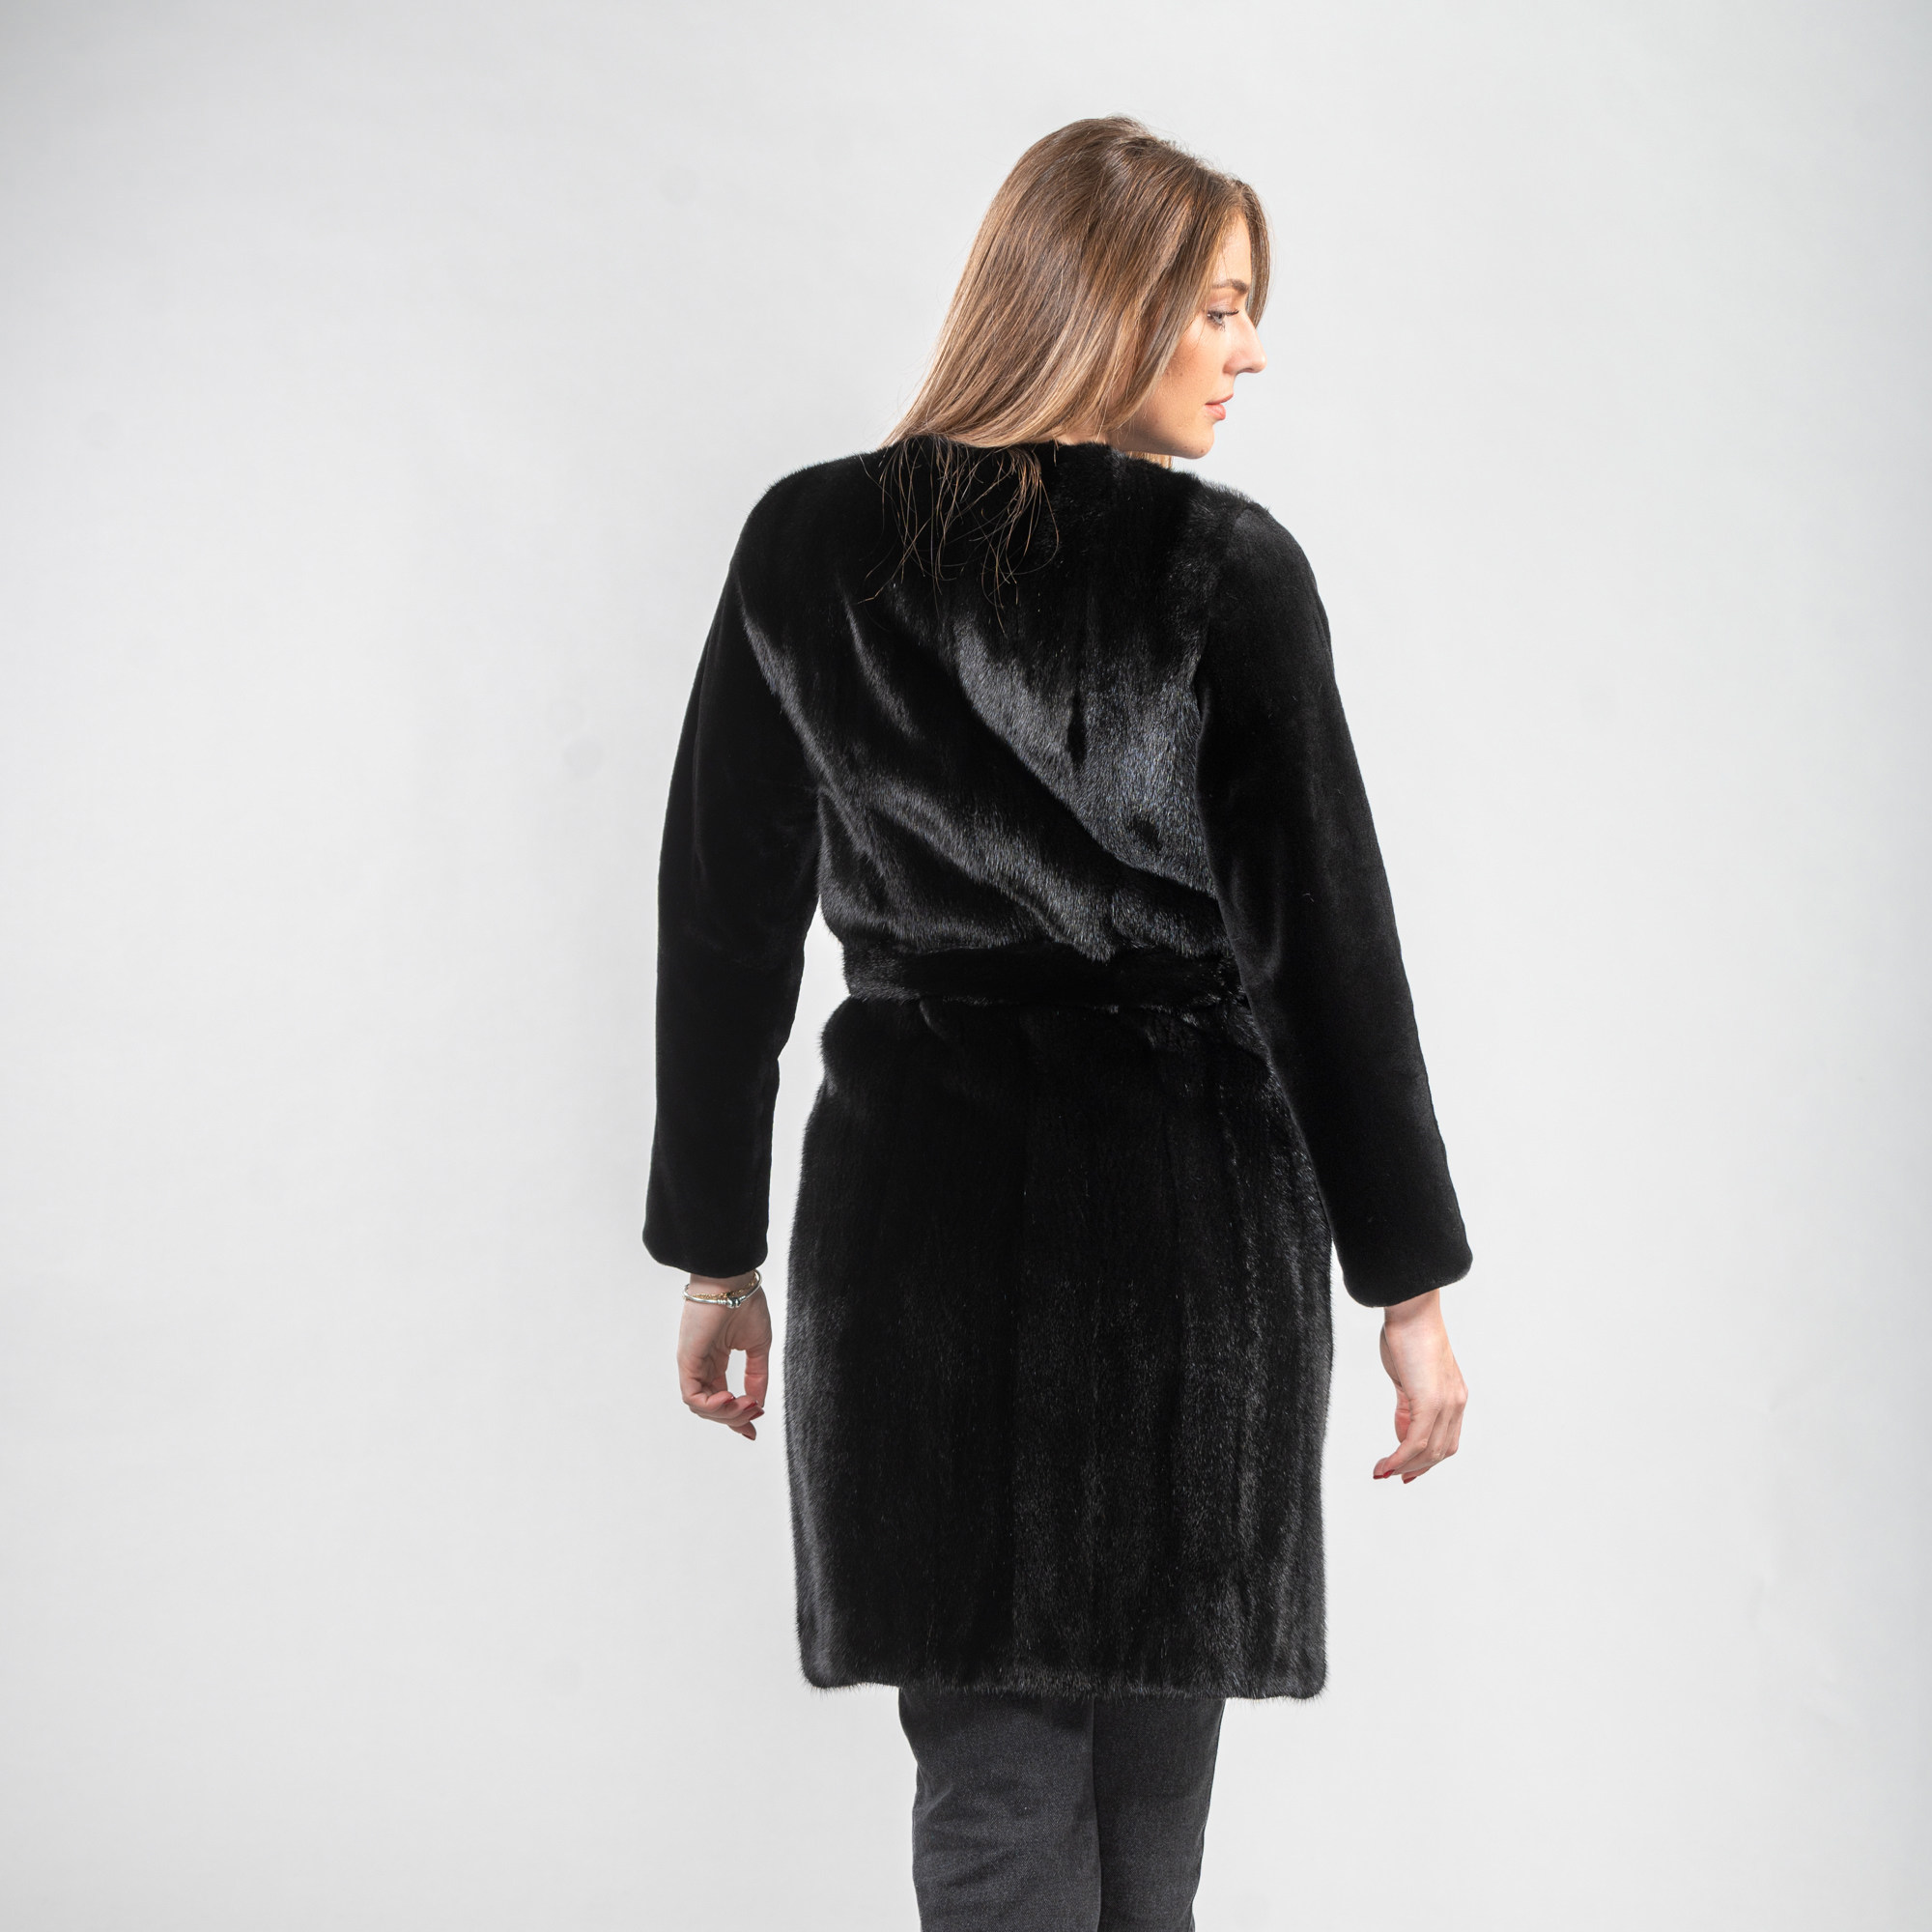 μαύρο γούνινο βιζόν παλτό με ζώνη